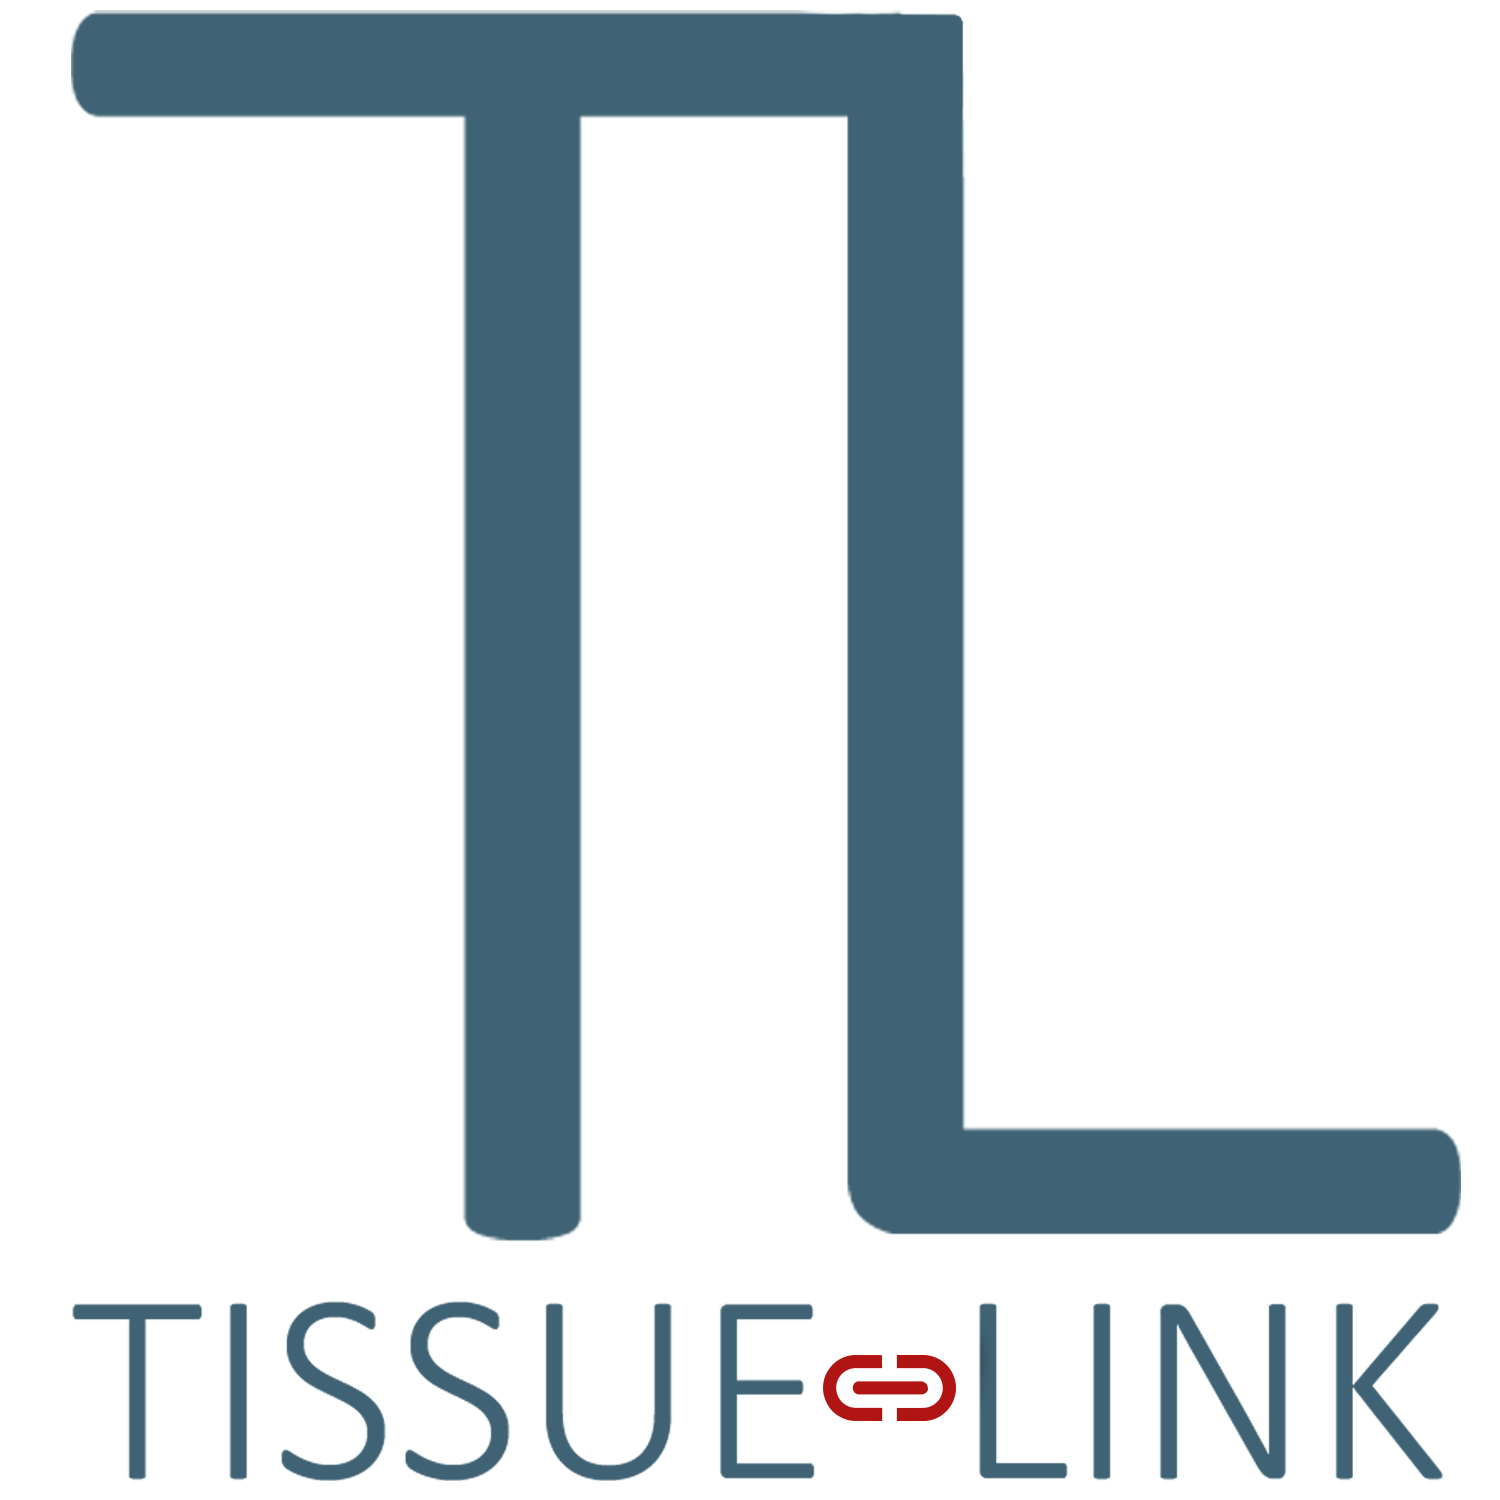 Tissue-Link